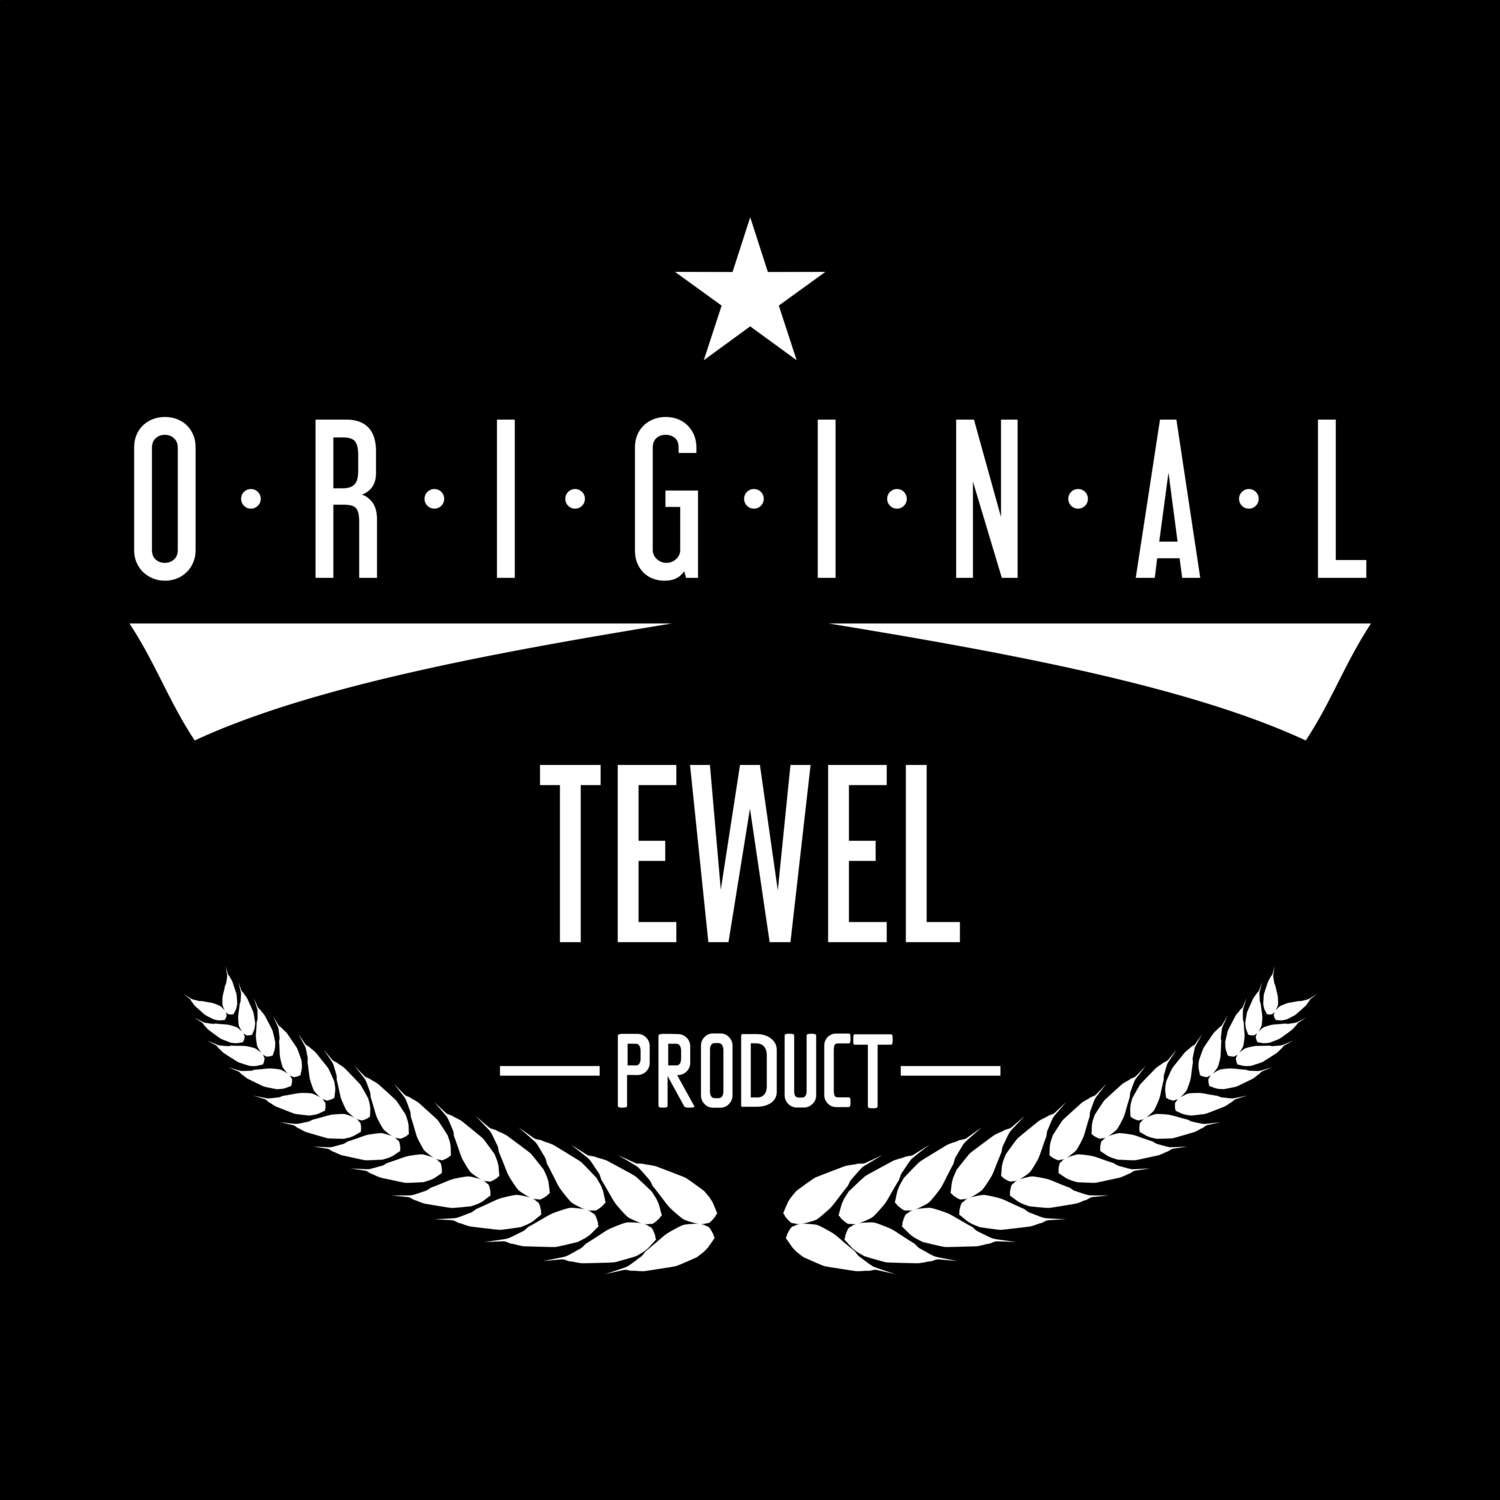 Tewel T-Shirt »Original Product«